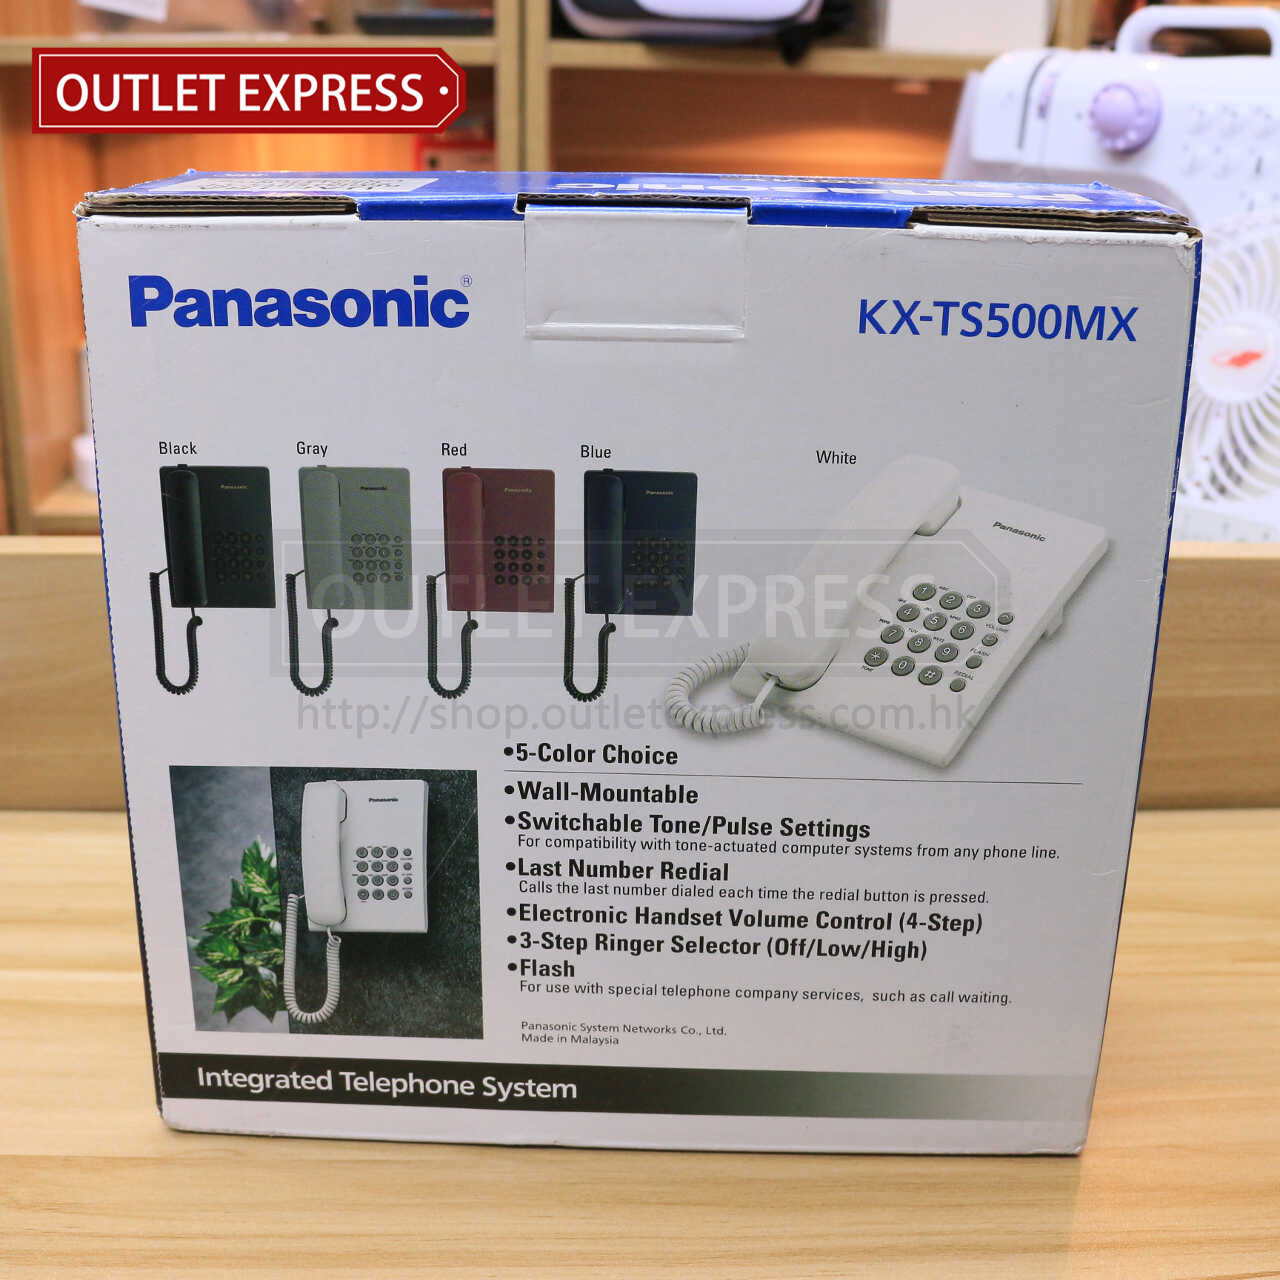 樂聲 Panasonic KX-TS500MX 家用有線電話 包裝- Outlet Express HK生活百貨城實拍相片